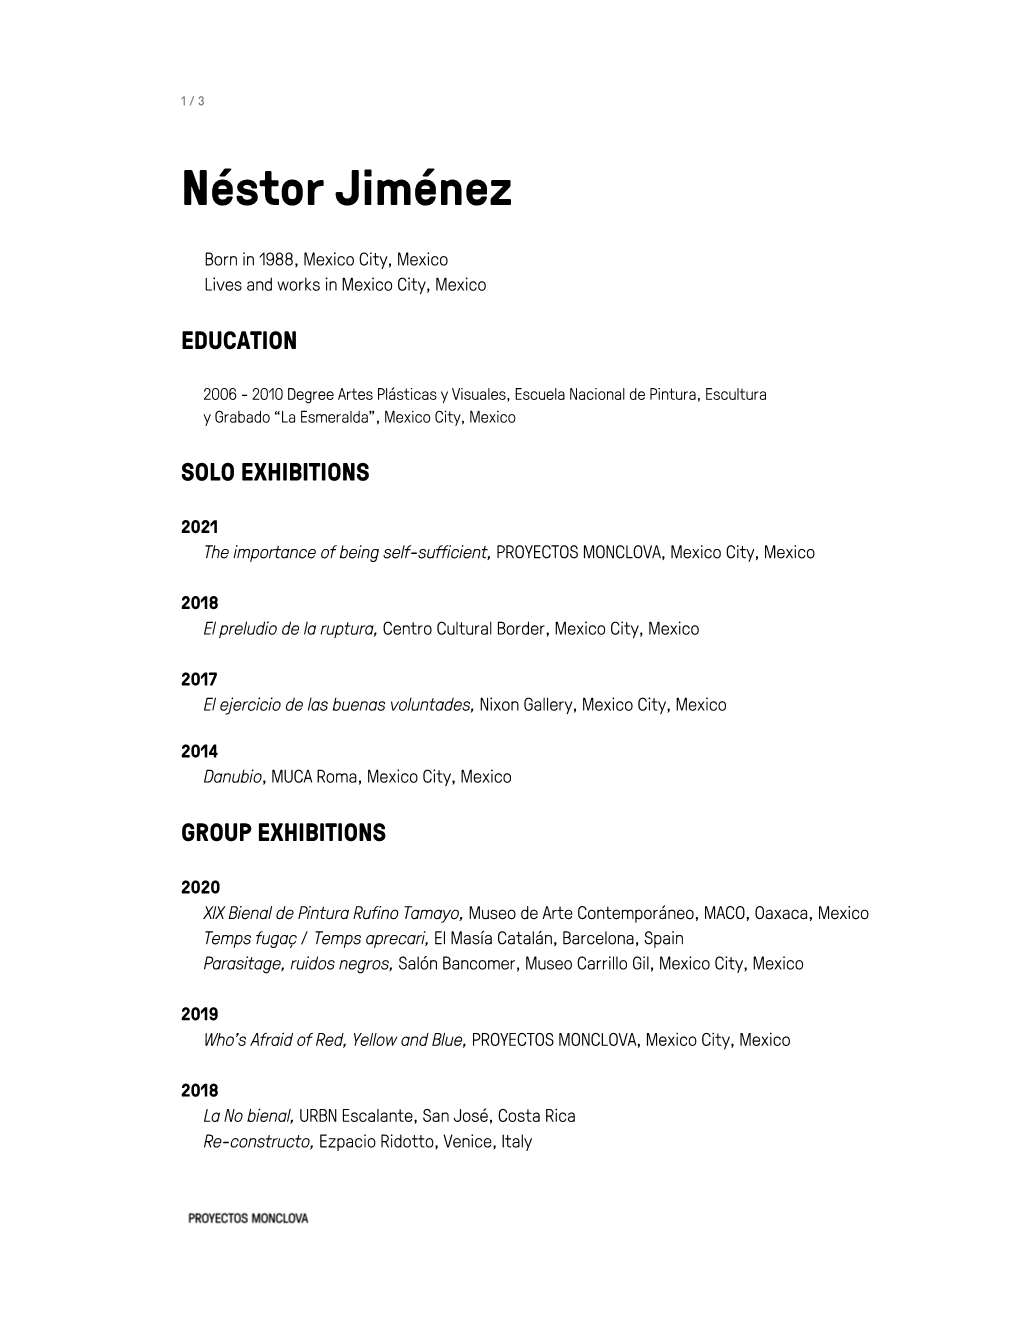 Néstor Jiménez